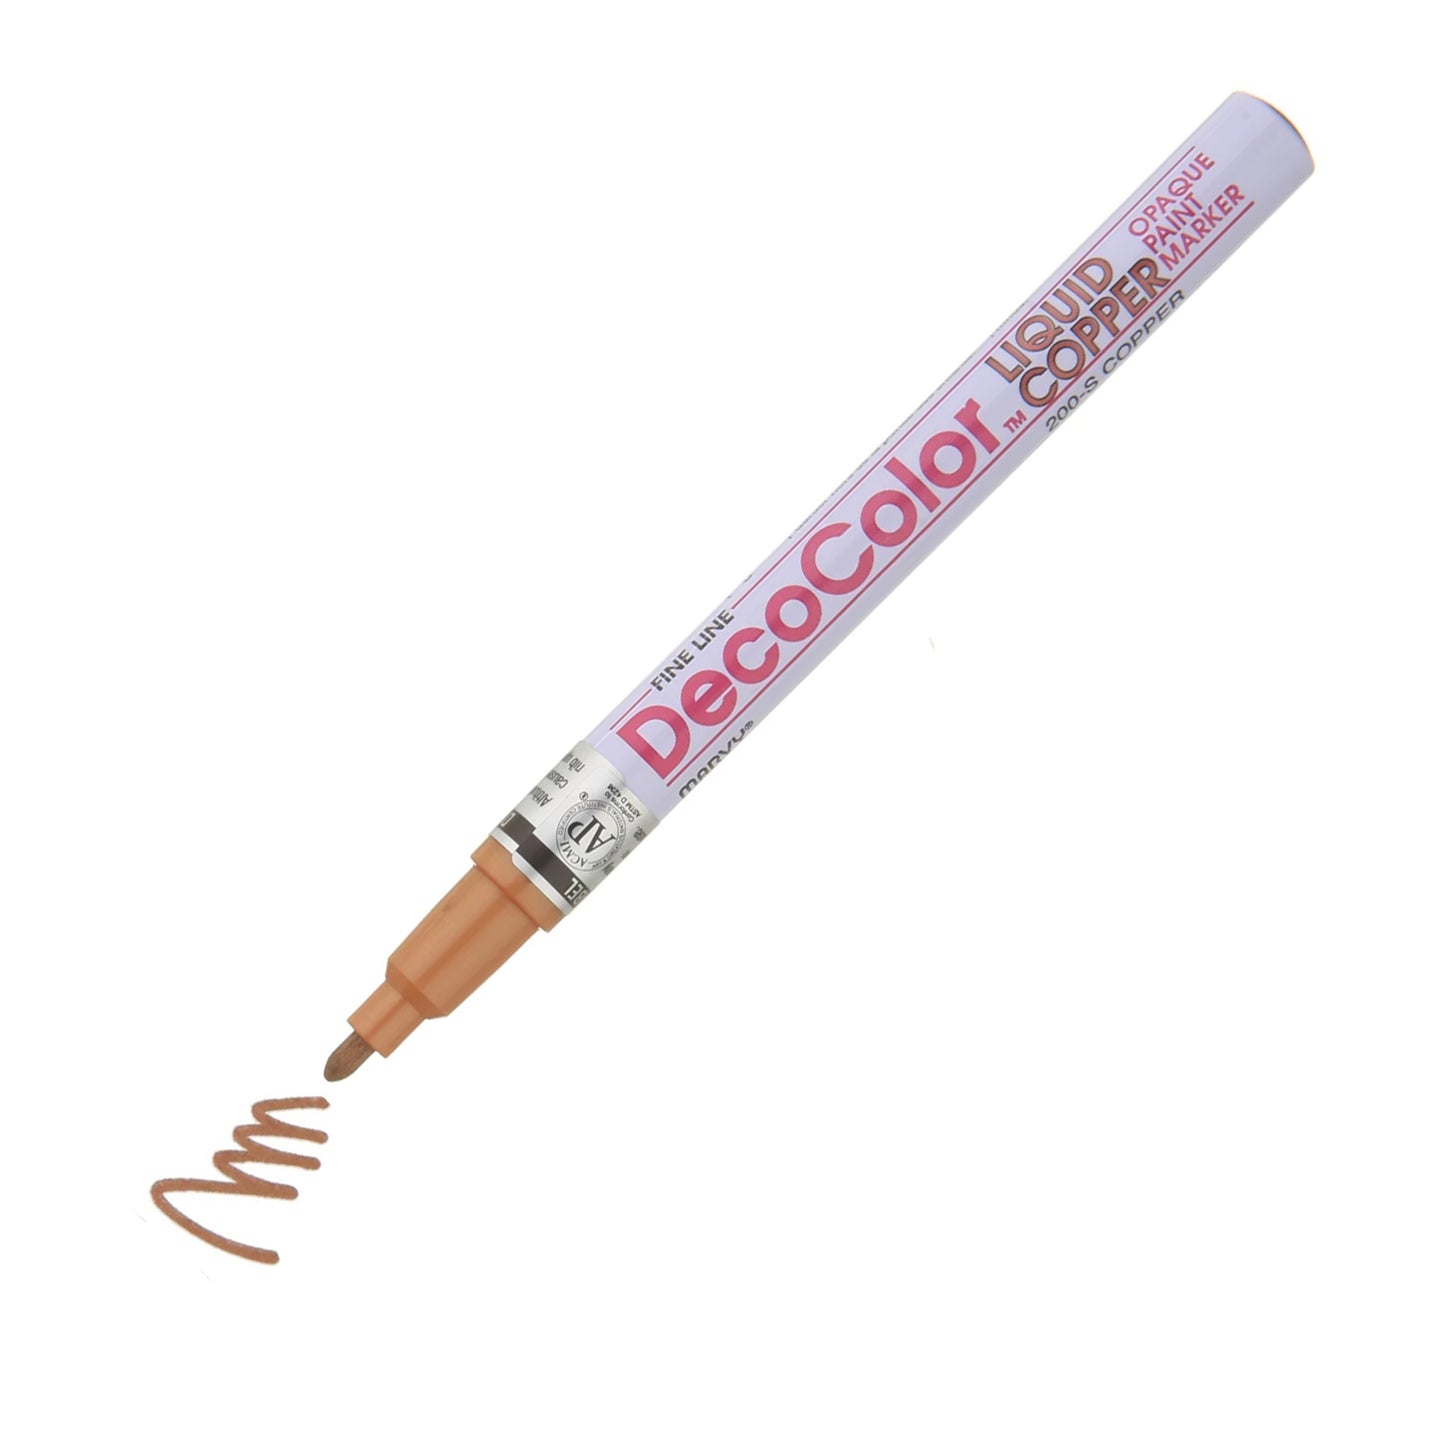 Marcador de pintura Decocolor, punta fina de bala de 3 mm